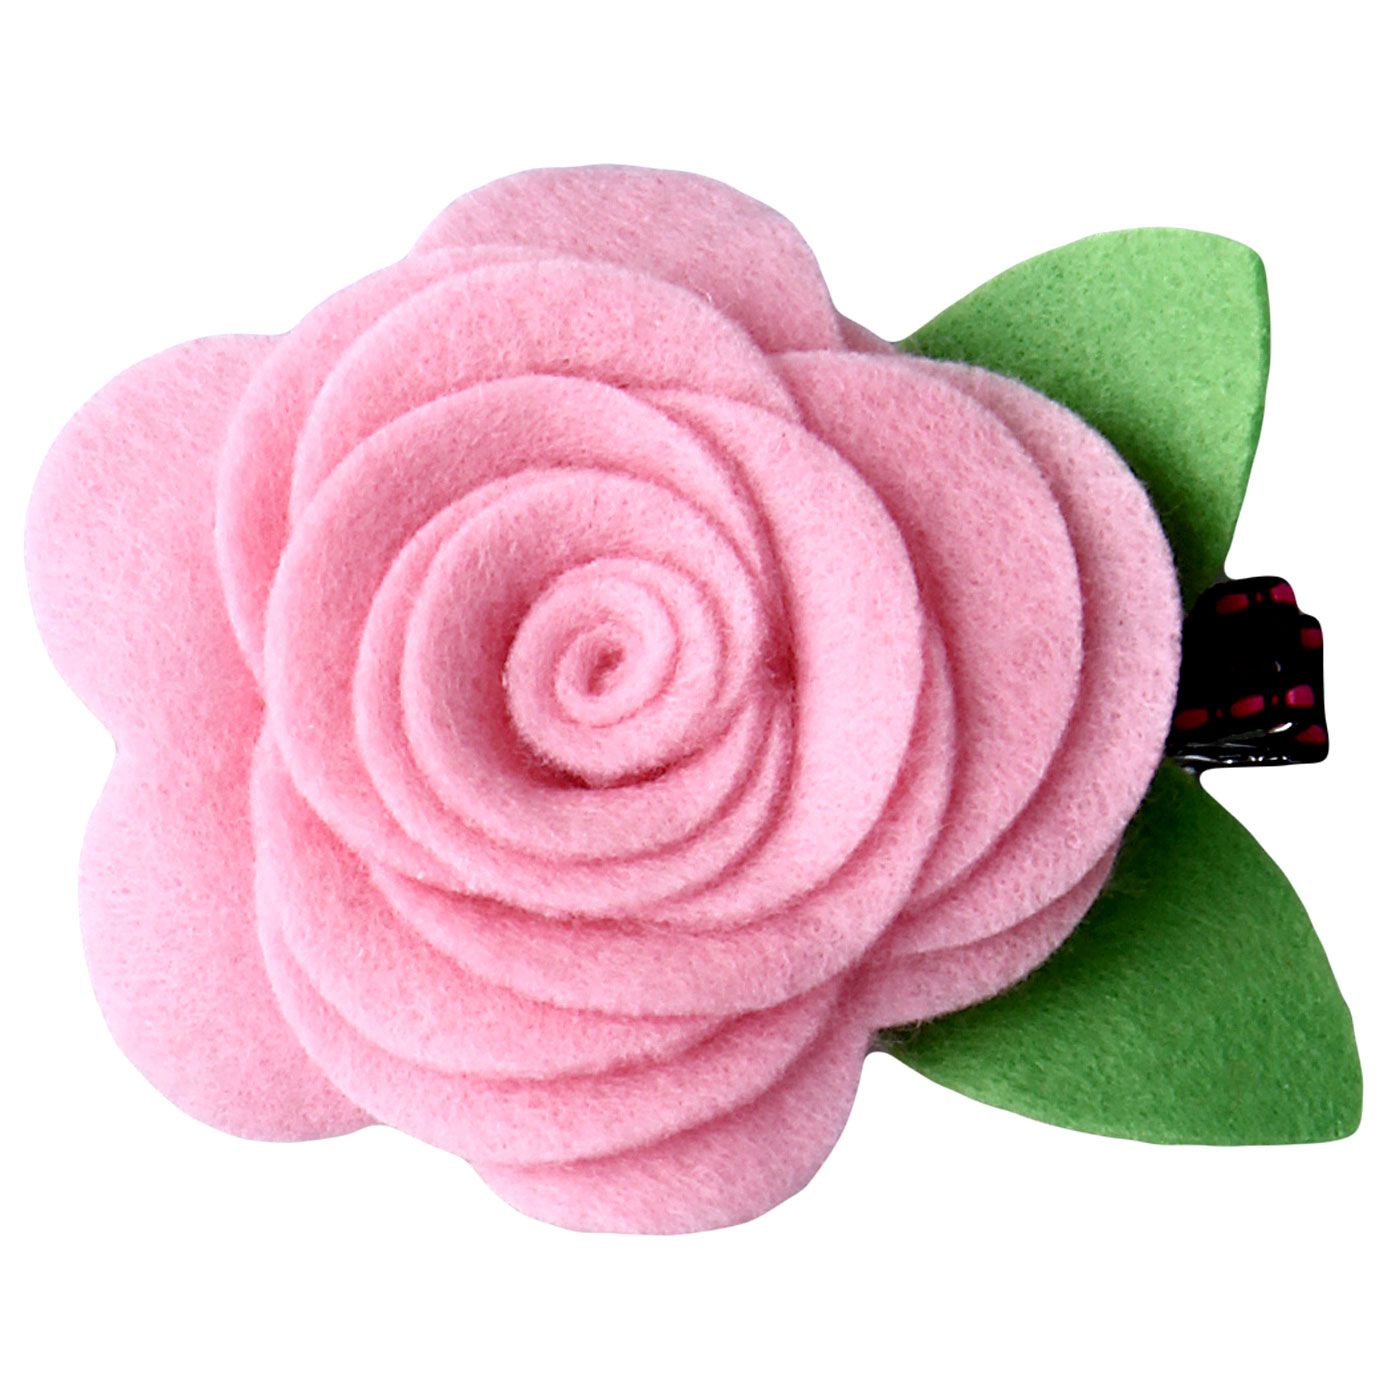 Bebecroc Felt Rose Flower Clip Pale Pink - 1